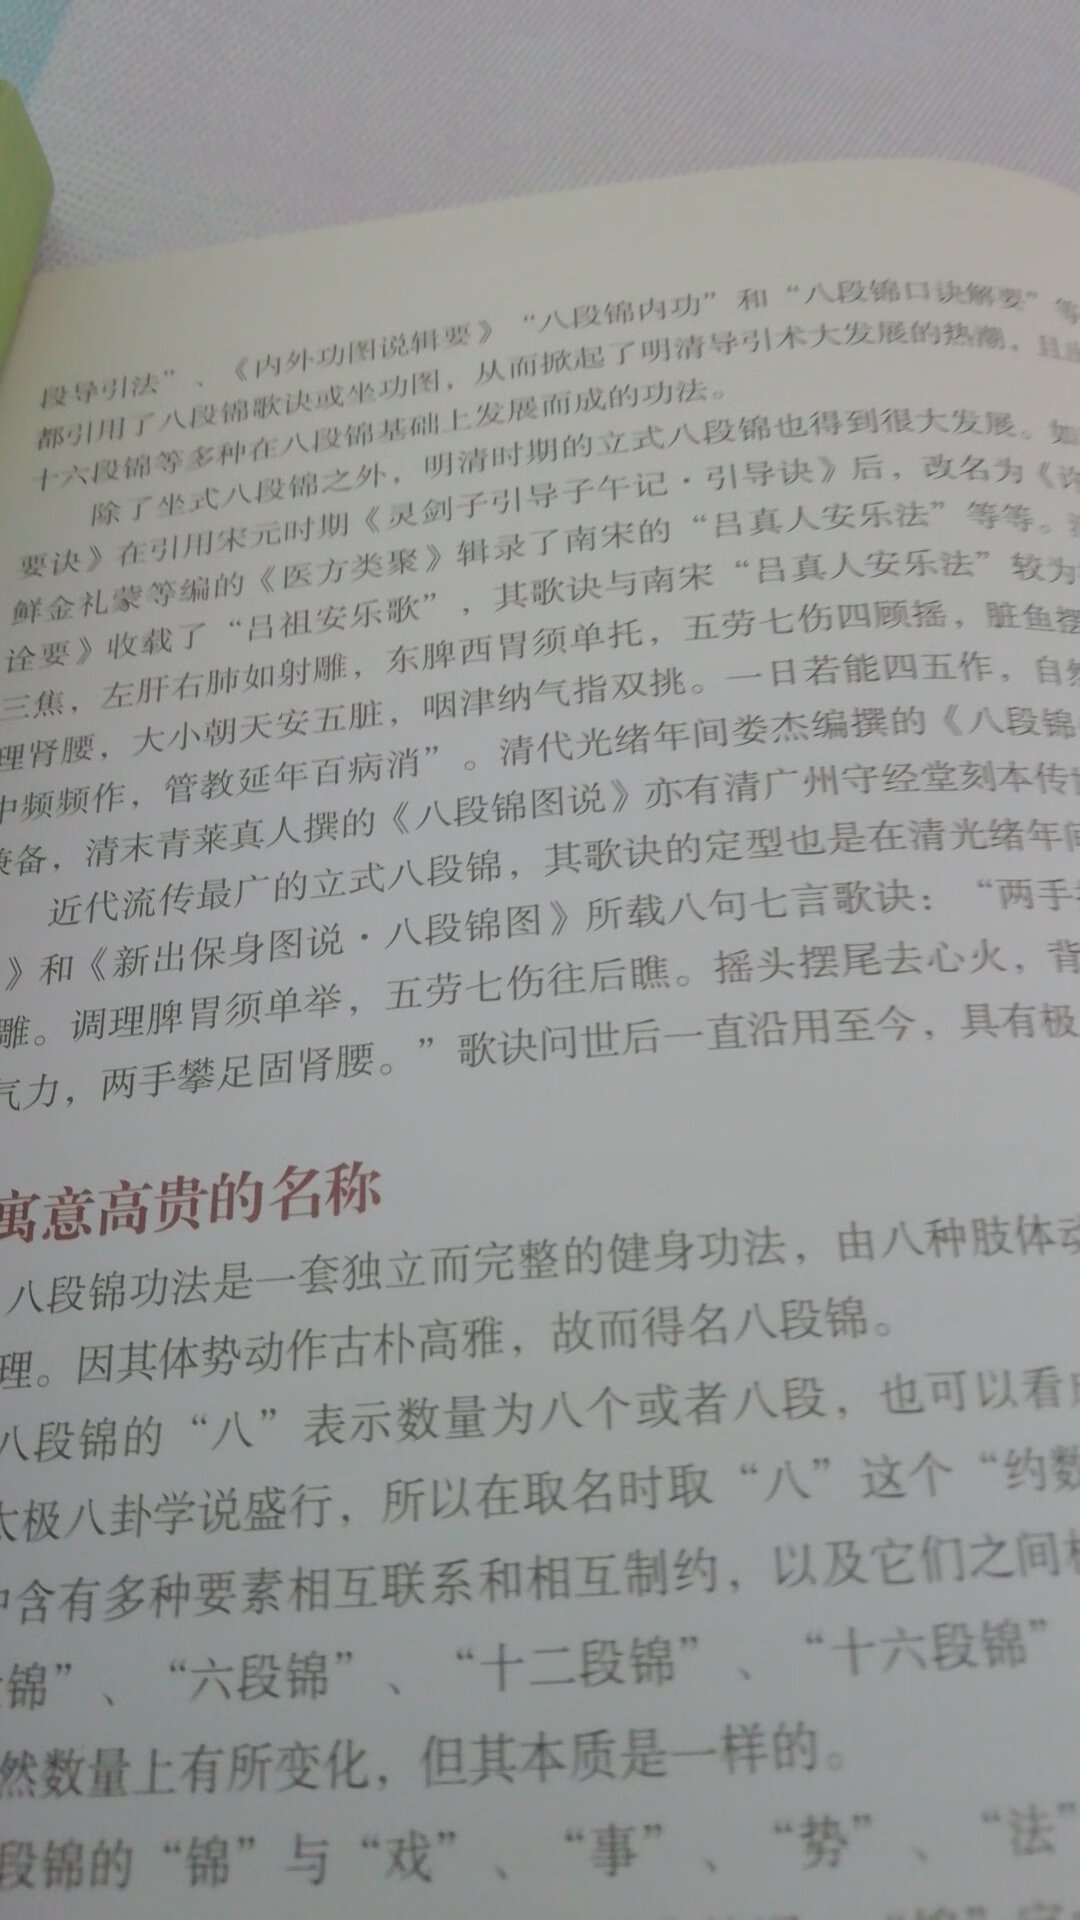 陶弘景八段锦一书讲述了中华导引术八段锦的来源及发展，全书图文并茂，易学易用，值得一看。